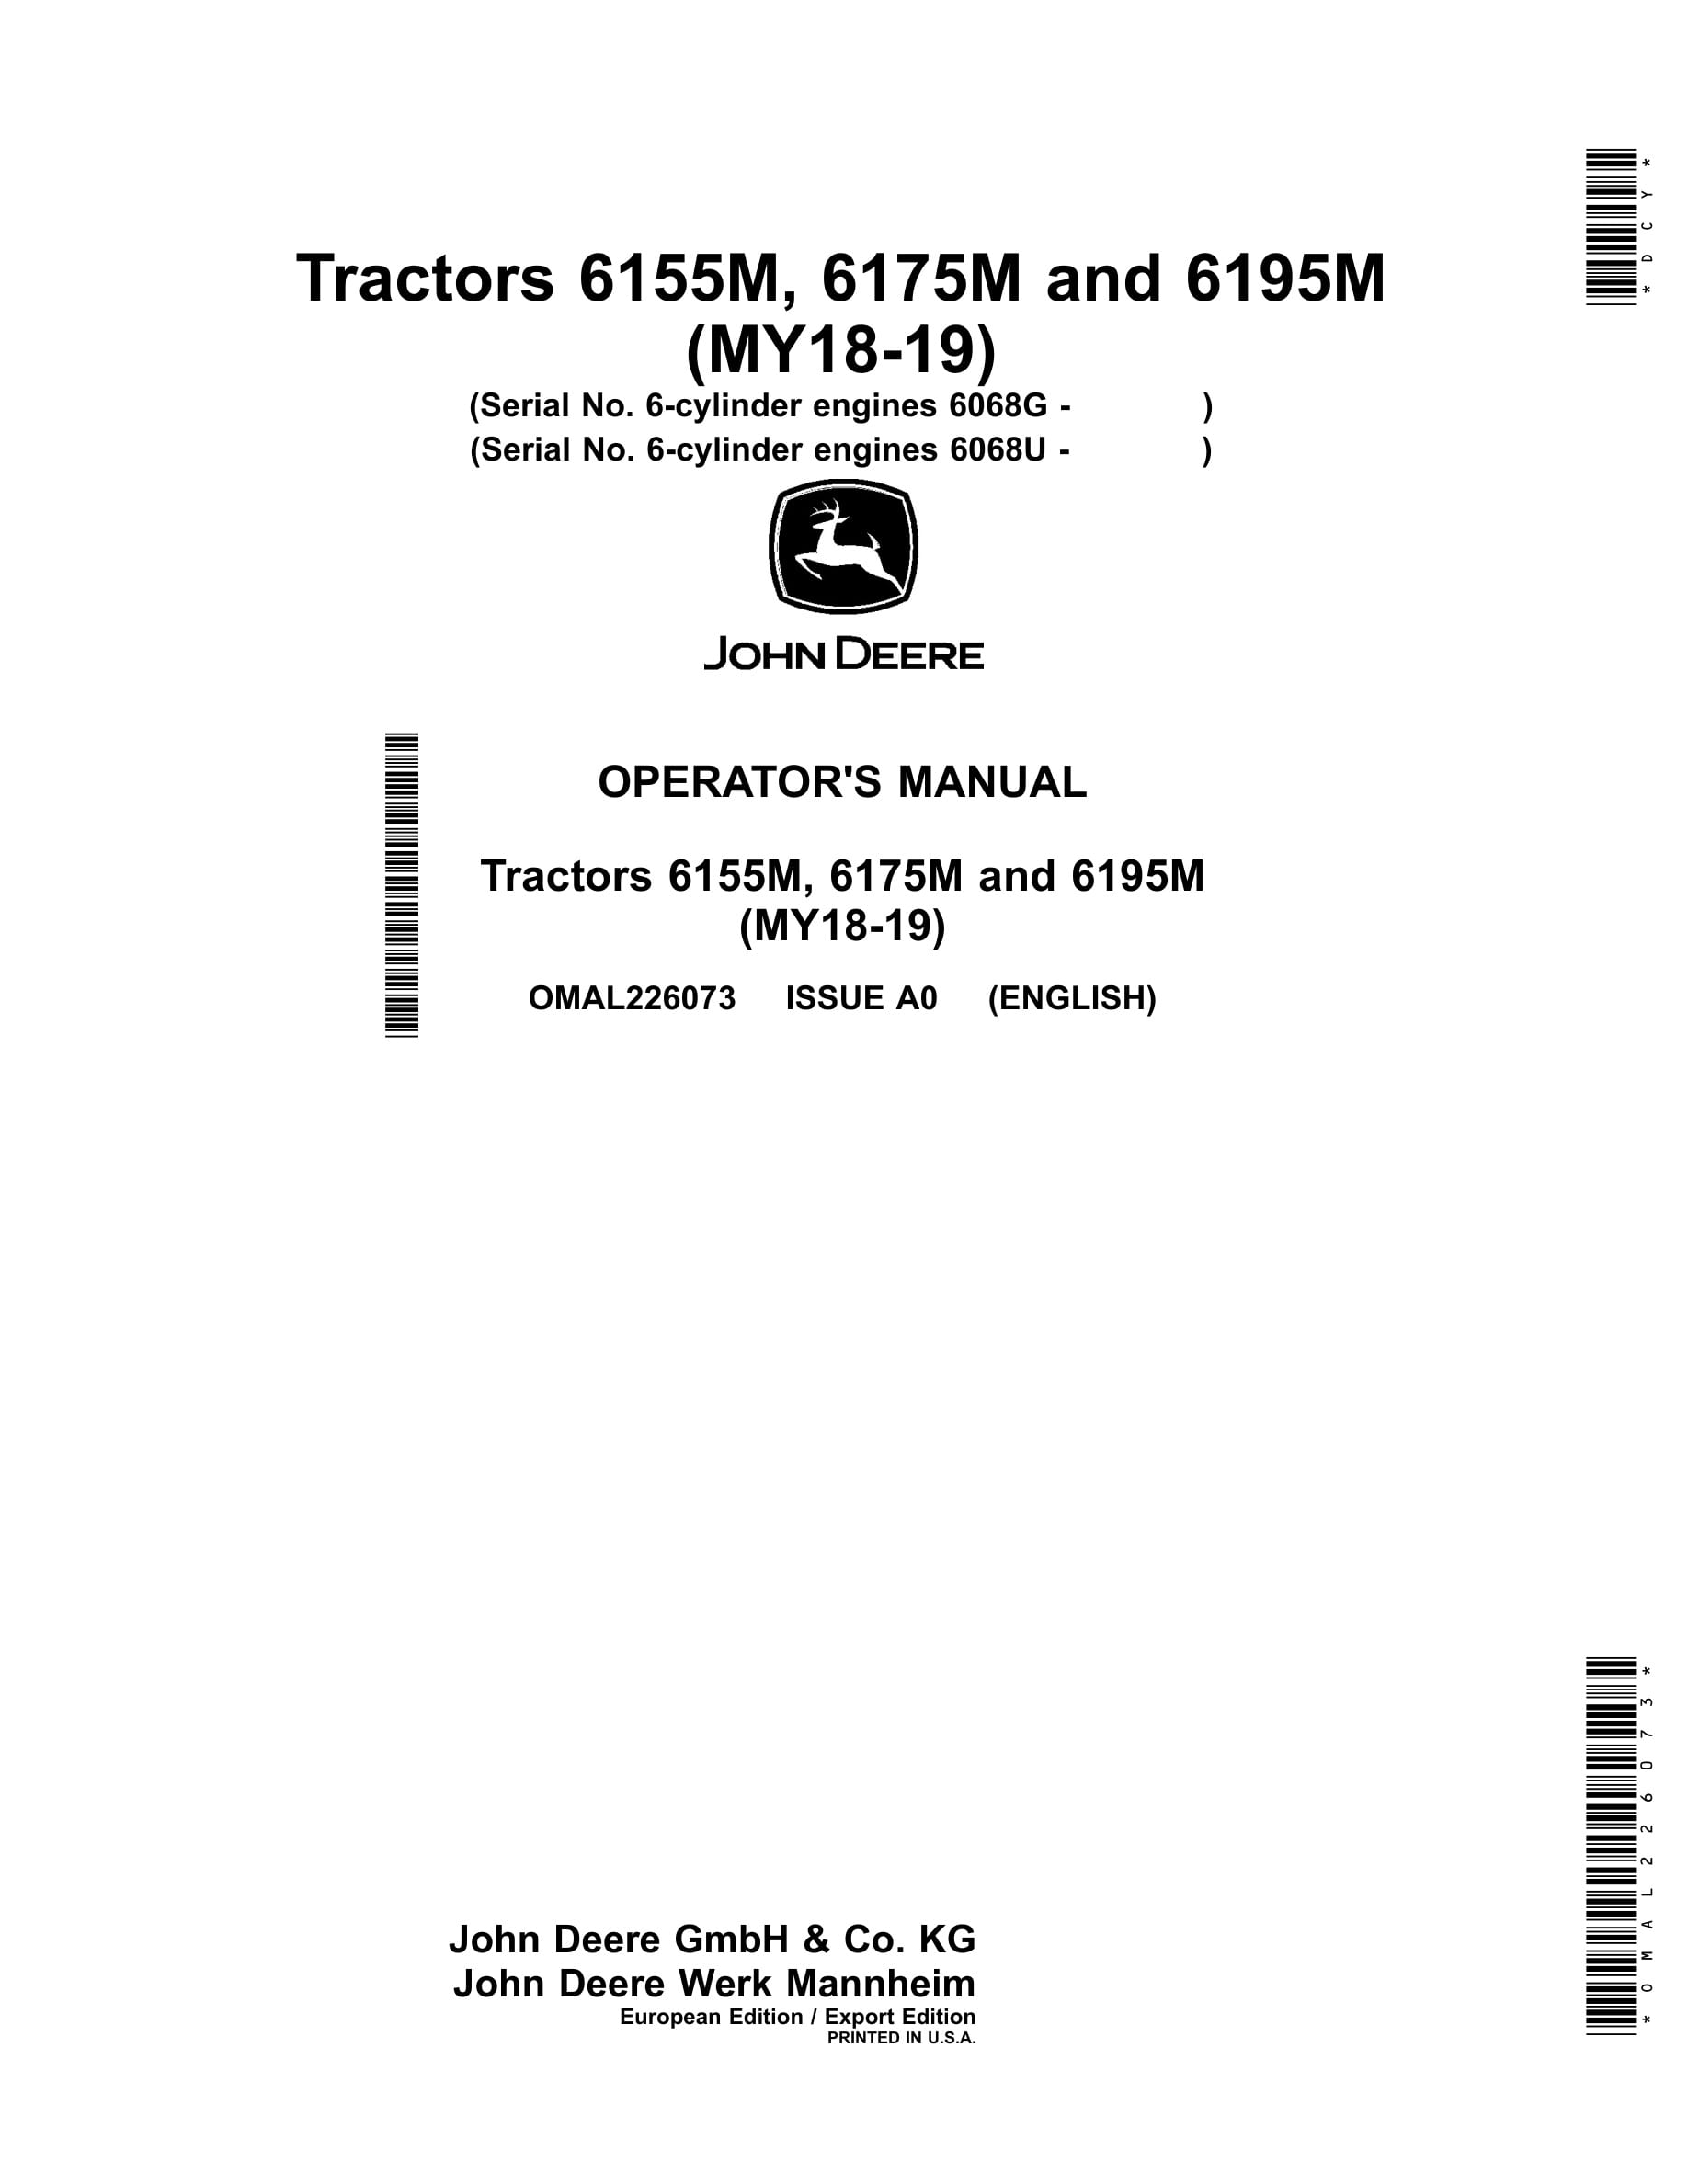 John Deere 6155m, 6175m And 6195m Tractors Operator Manuals OMAL226073-1